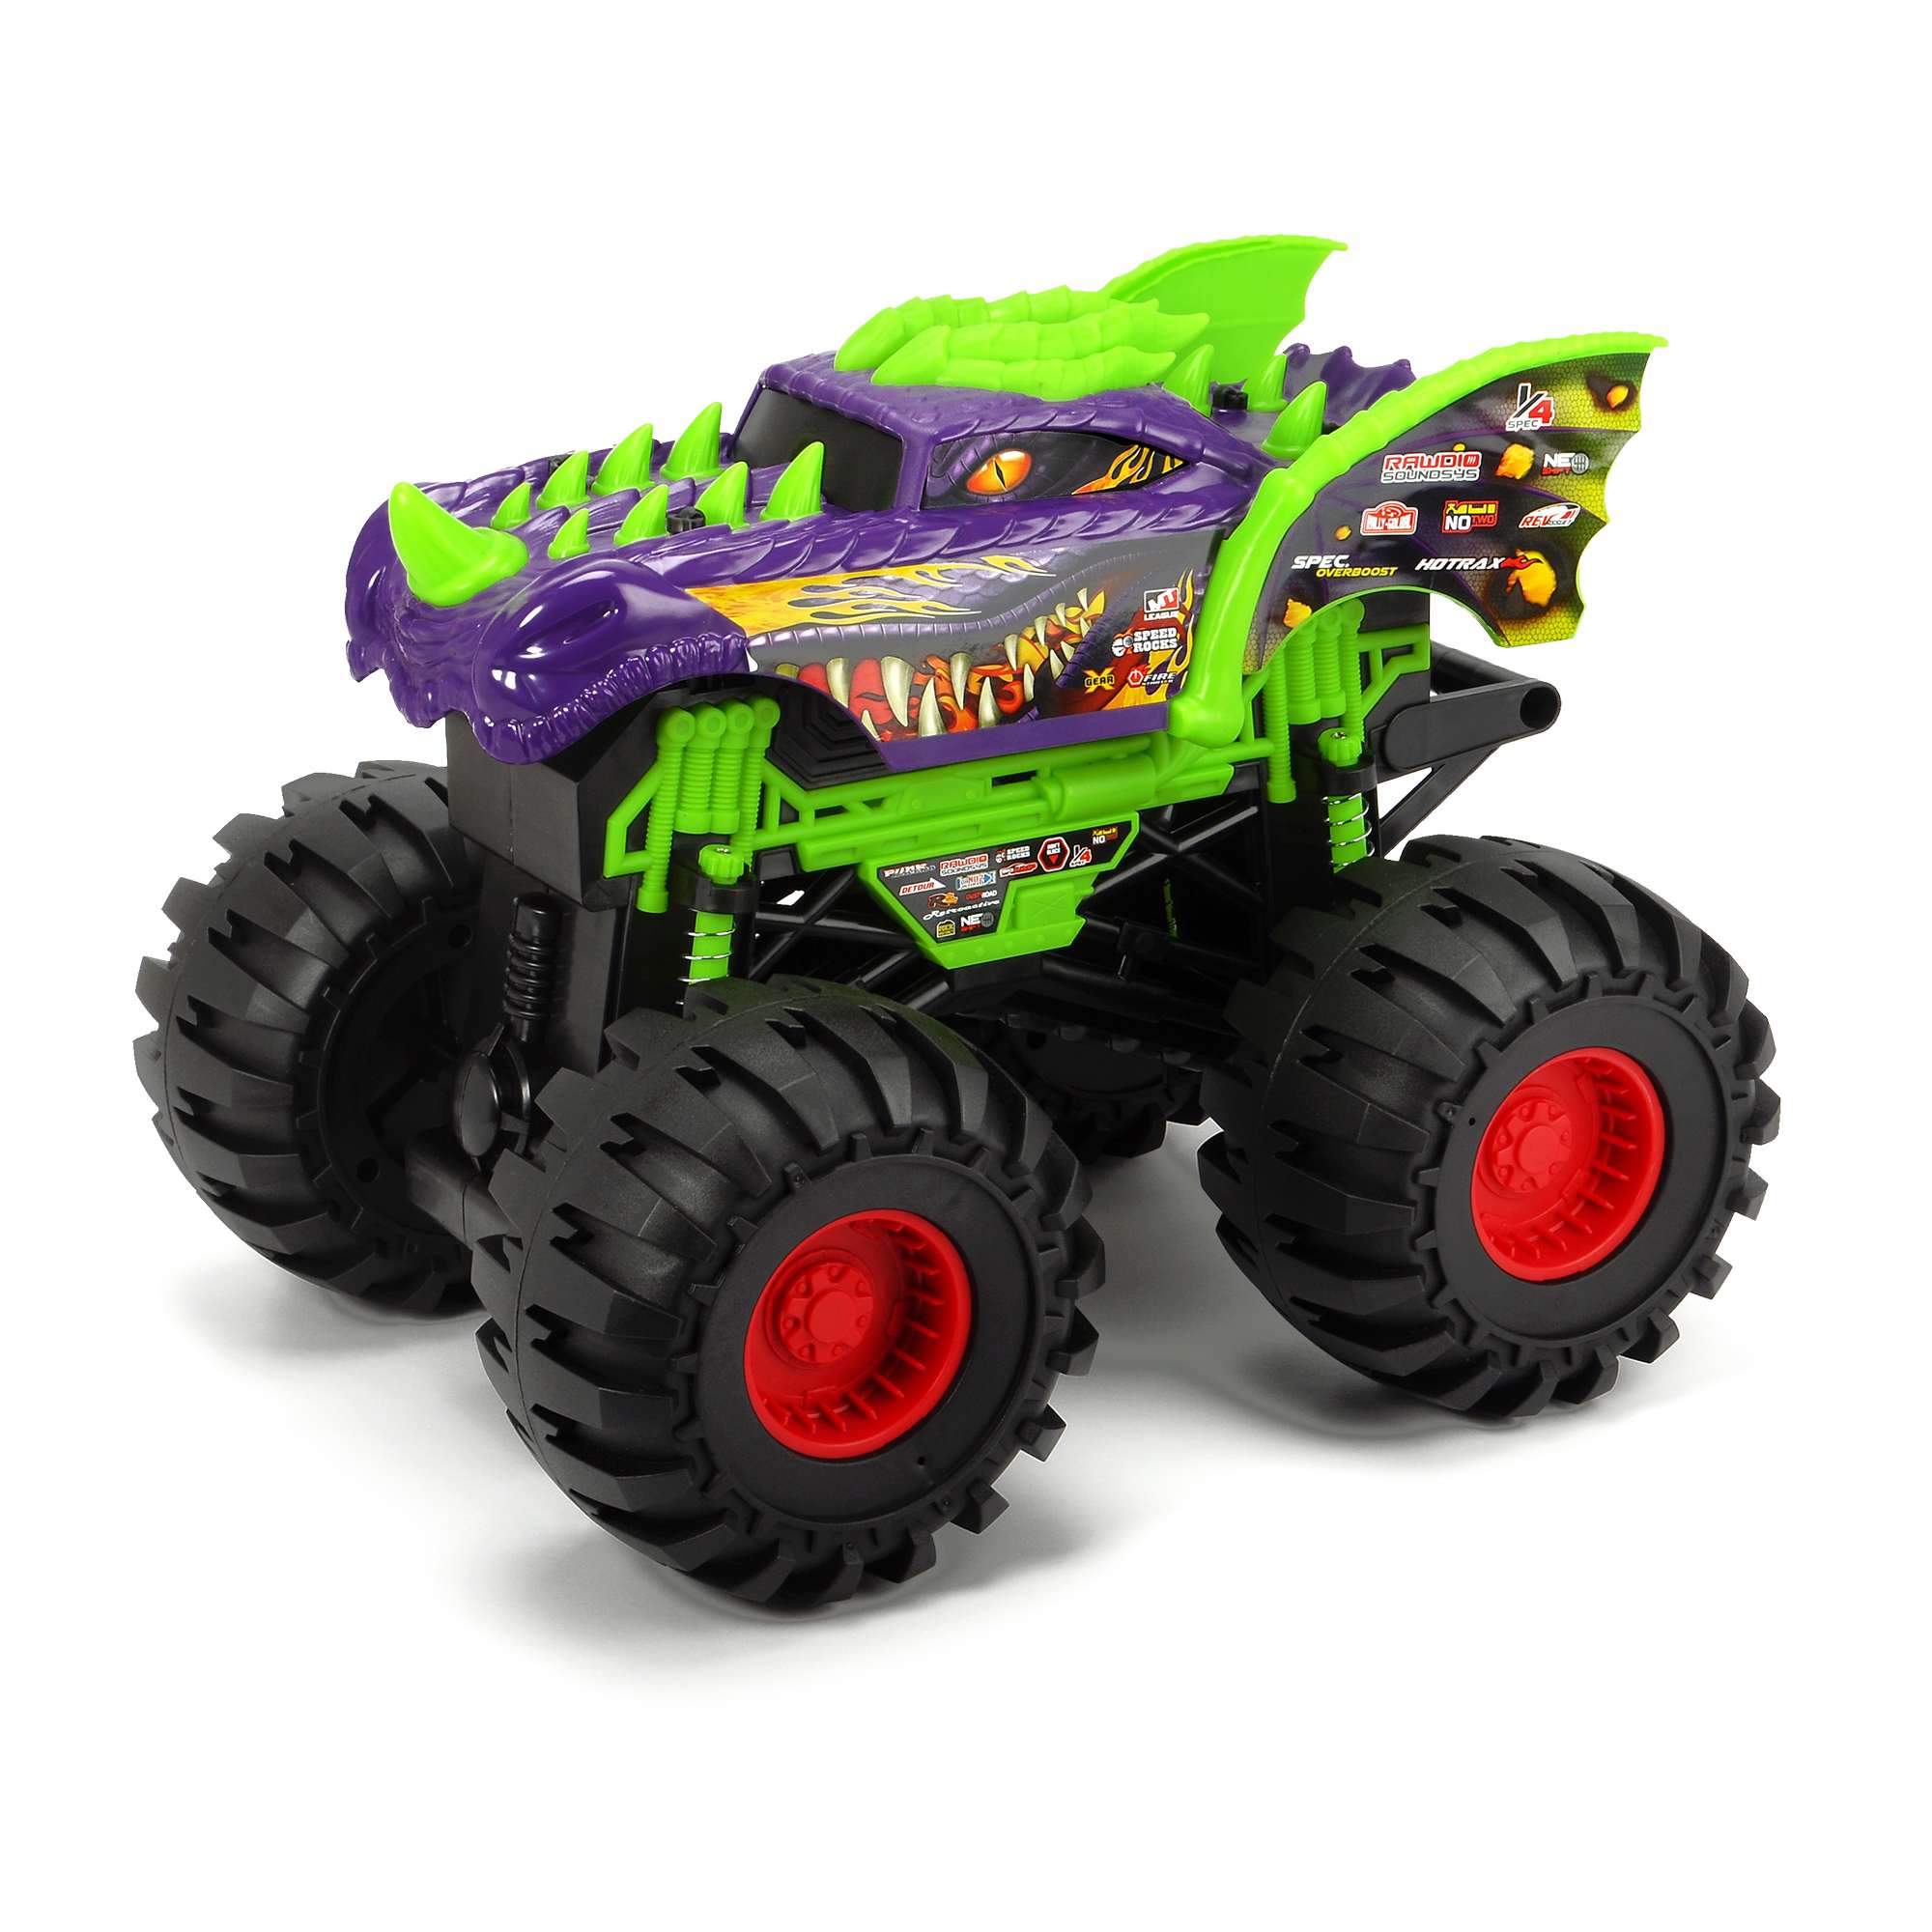 Dragon monster truck - MOTOR & CO.